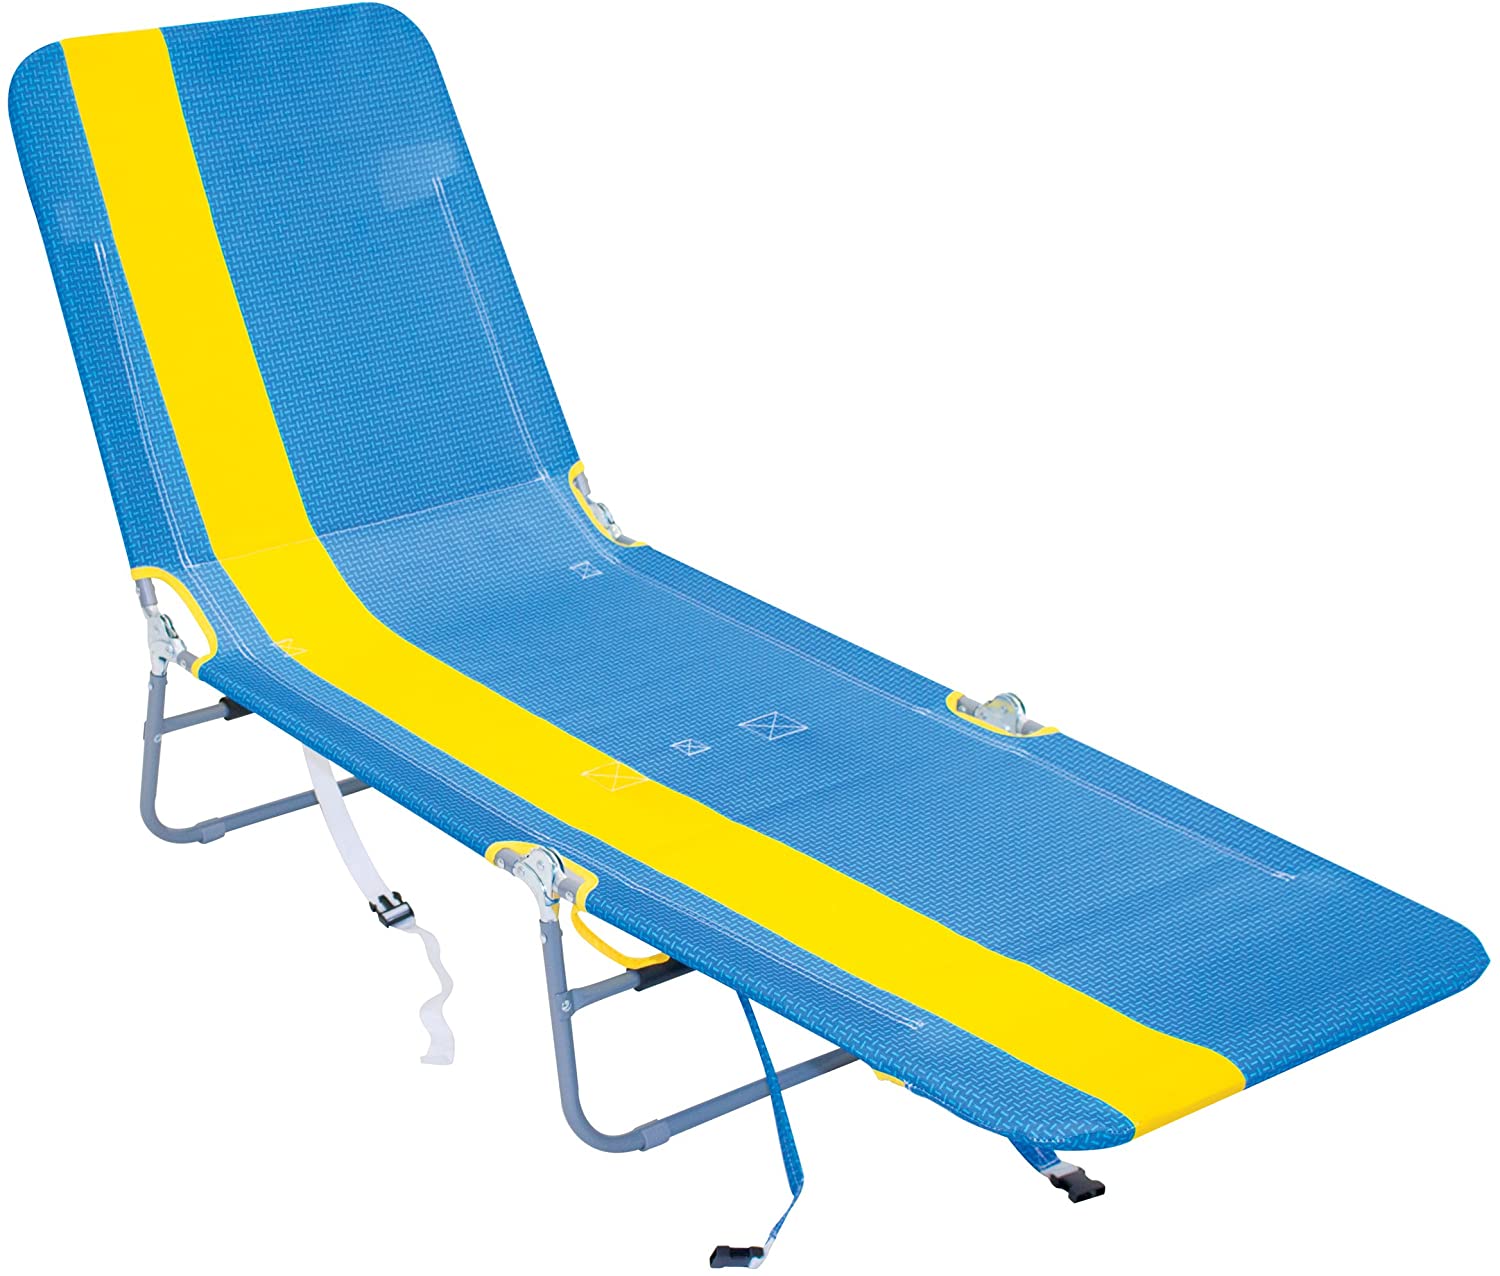 RIO Beach Polyester Foldable Beach Lounge Chair